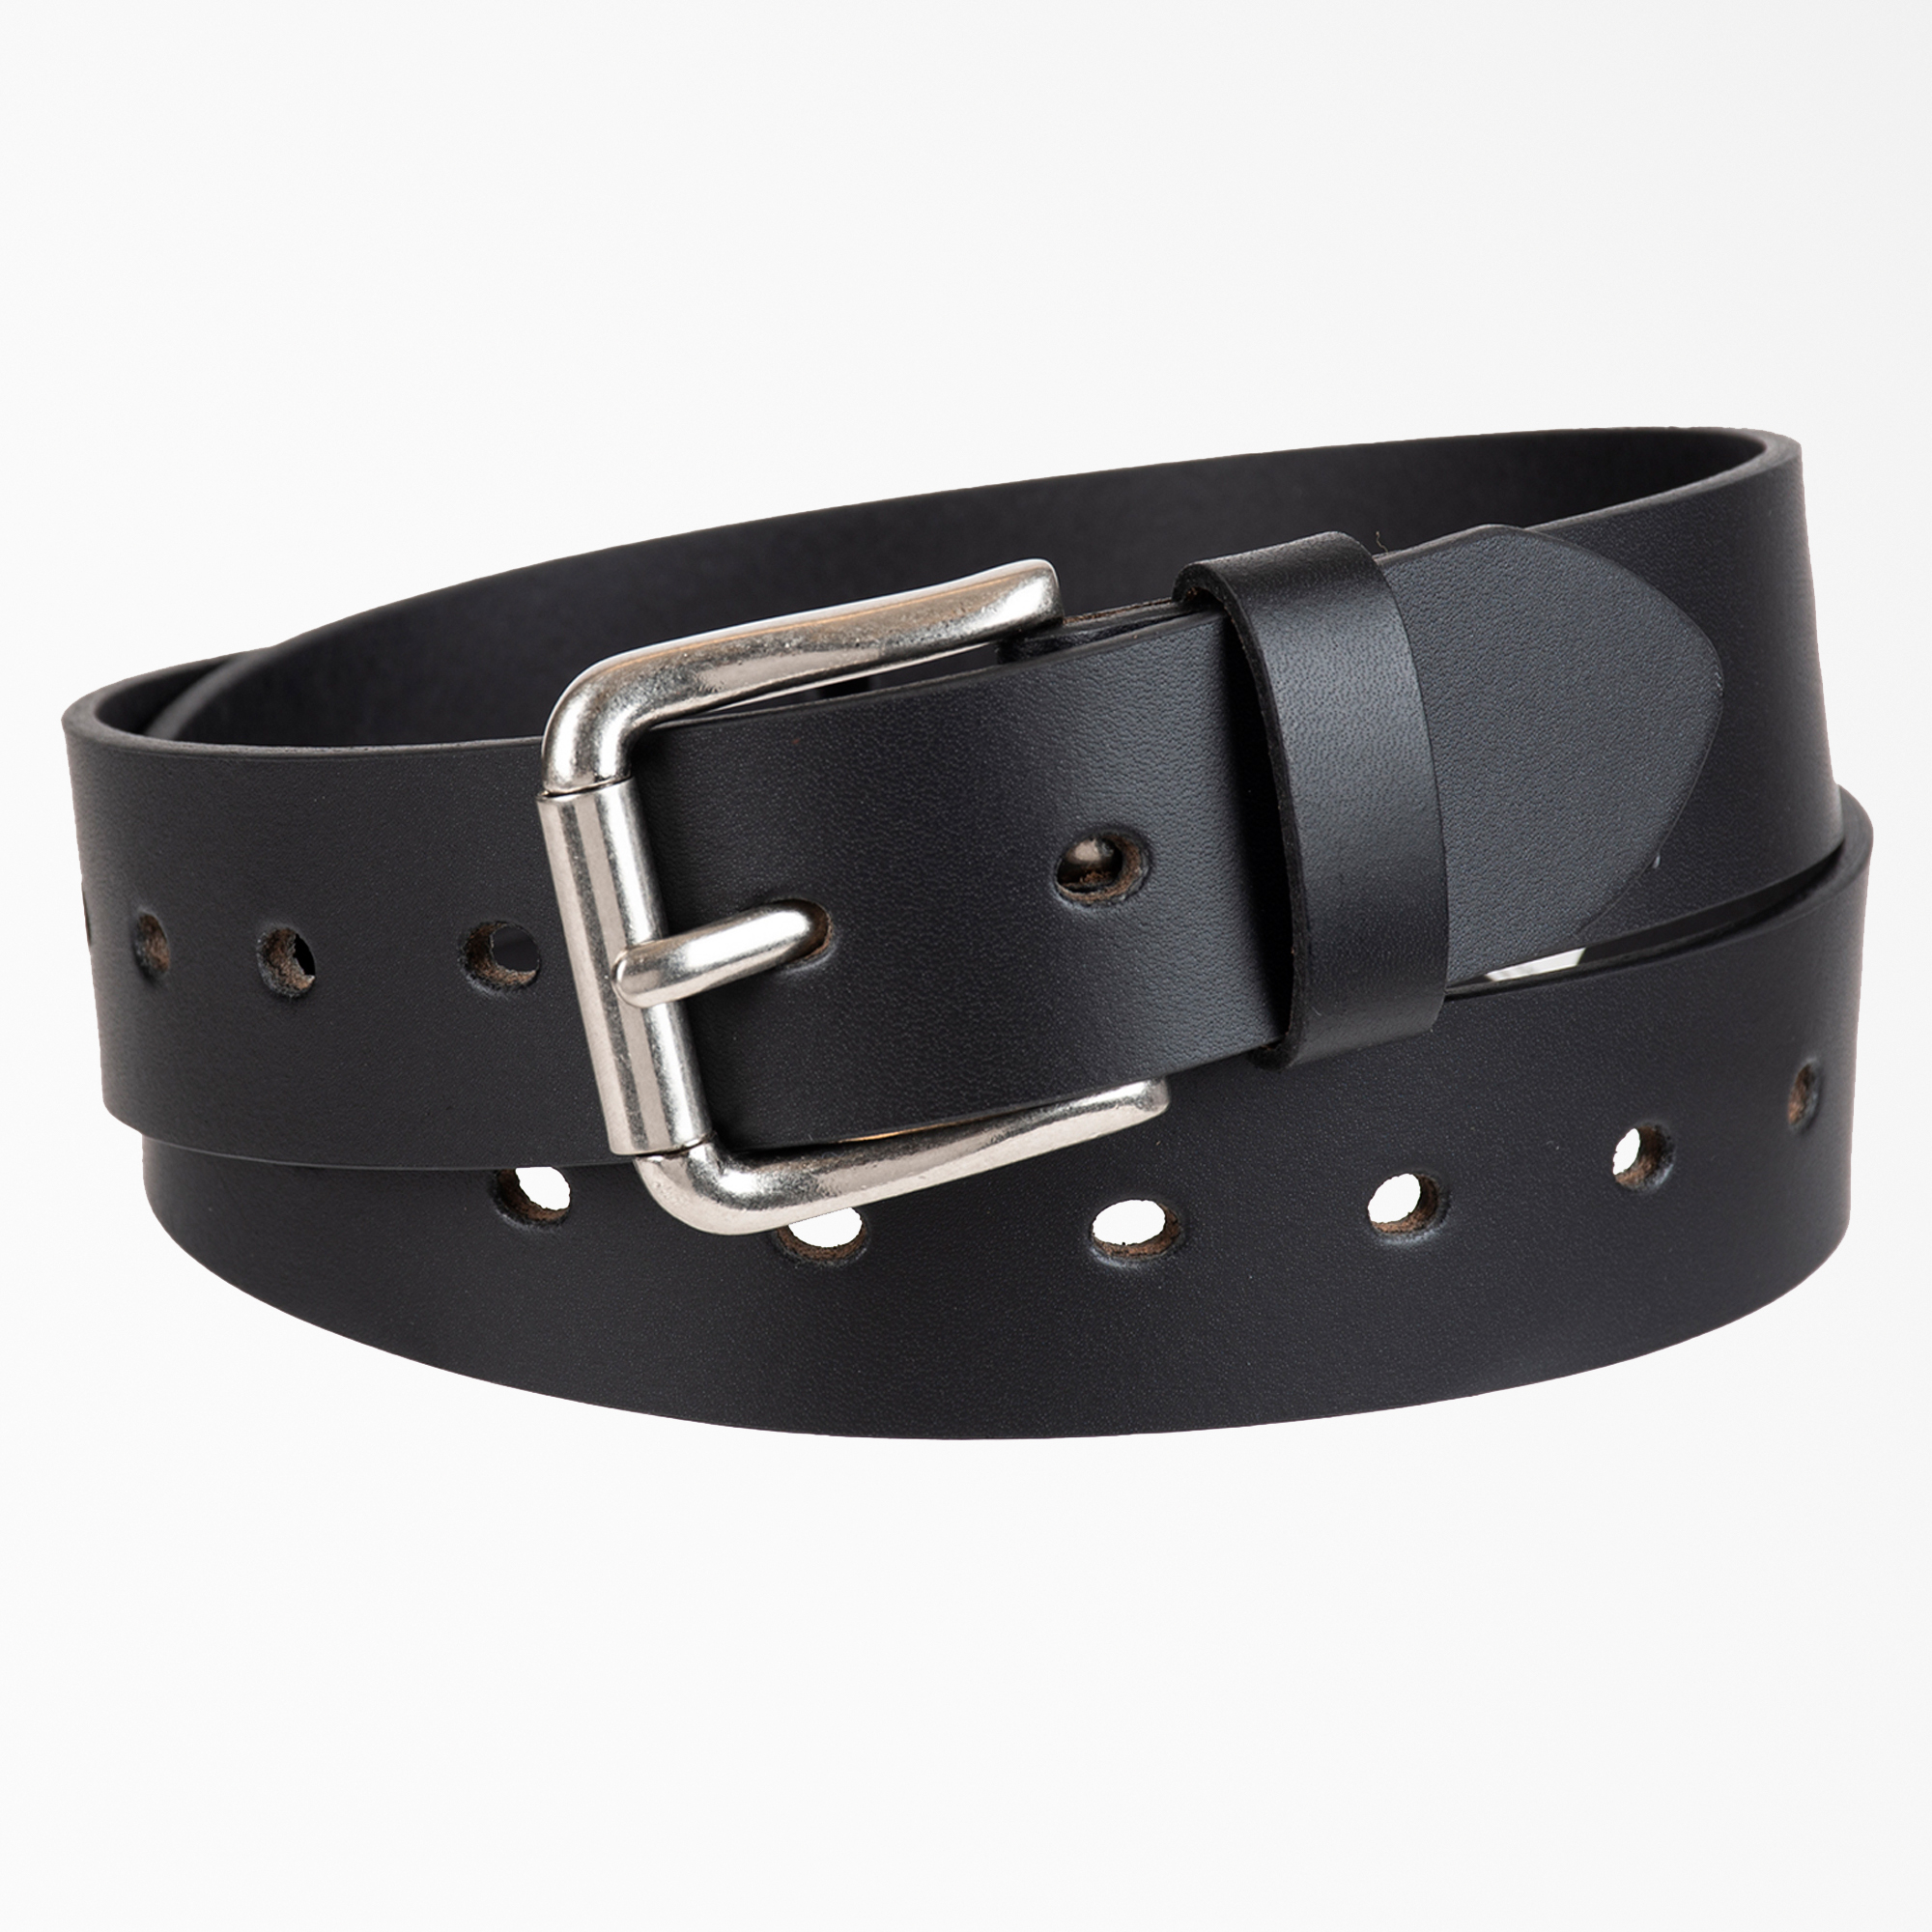 Women's Casual Leather Belt - Black (BK)